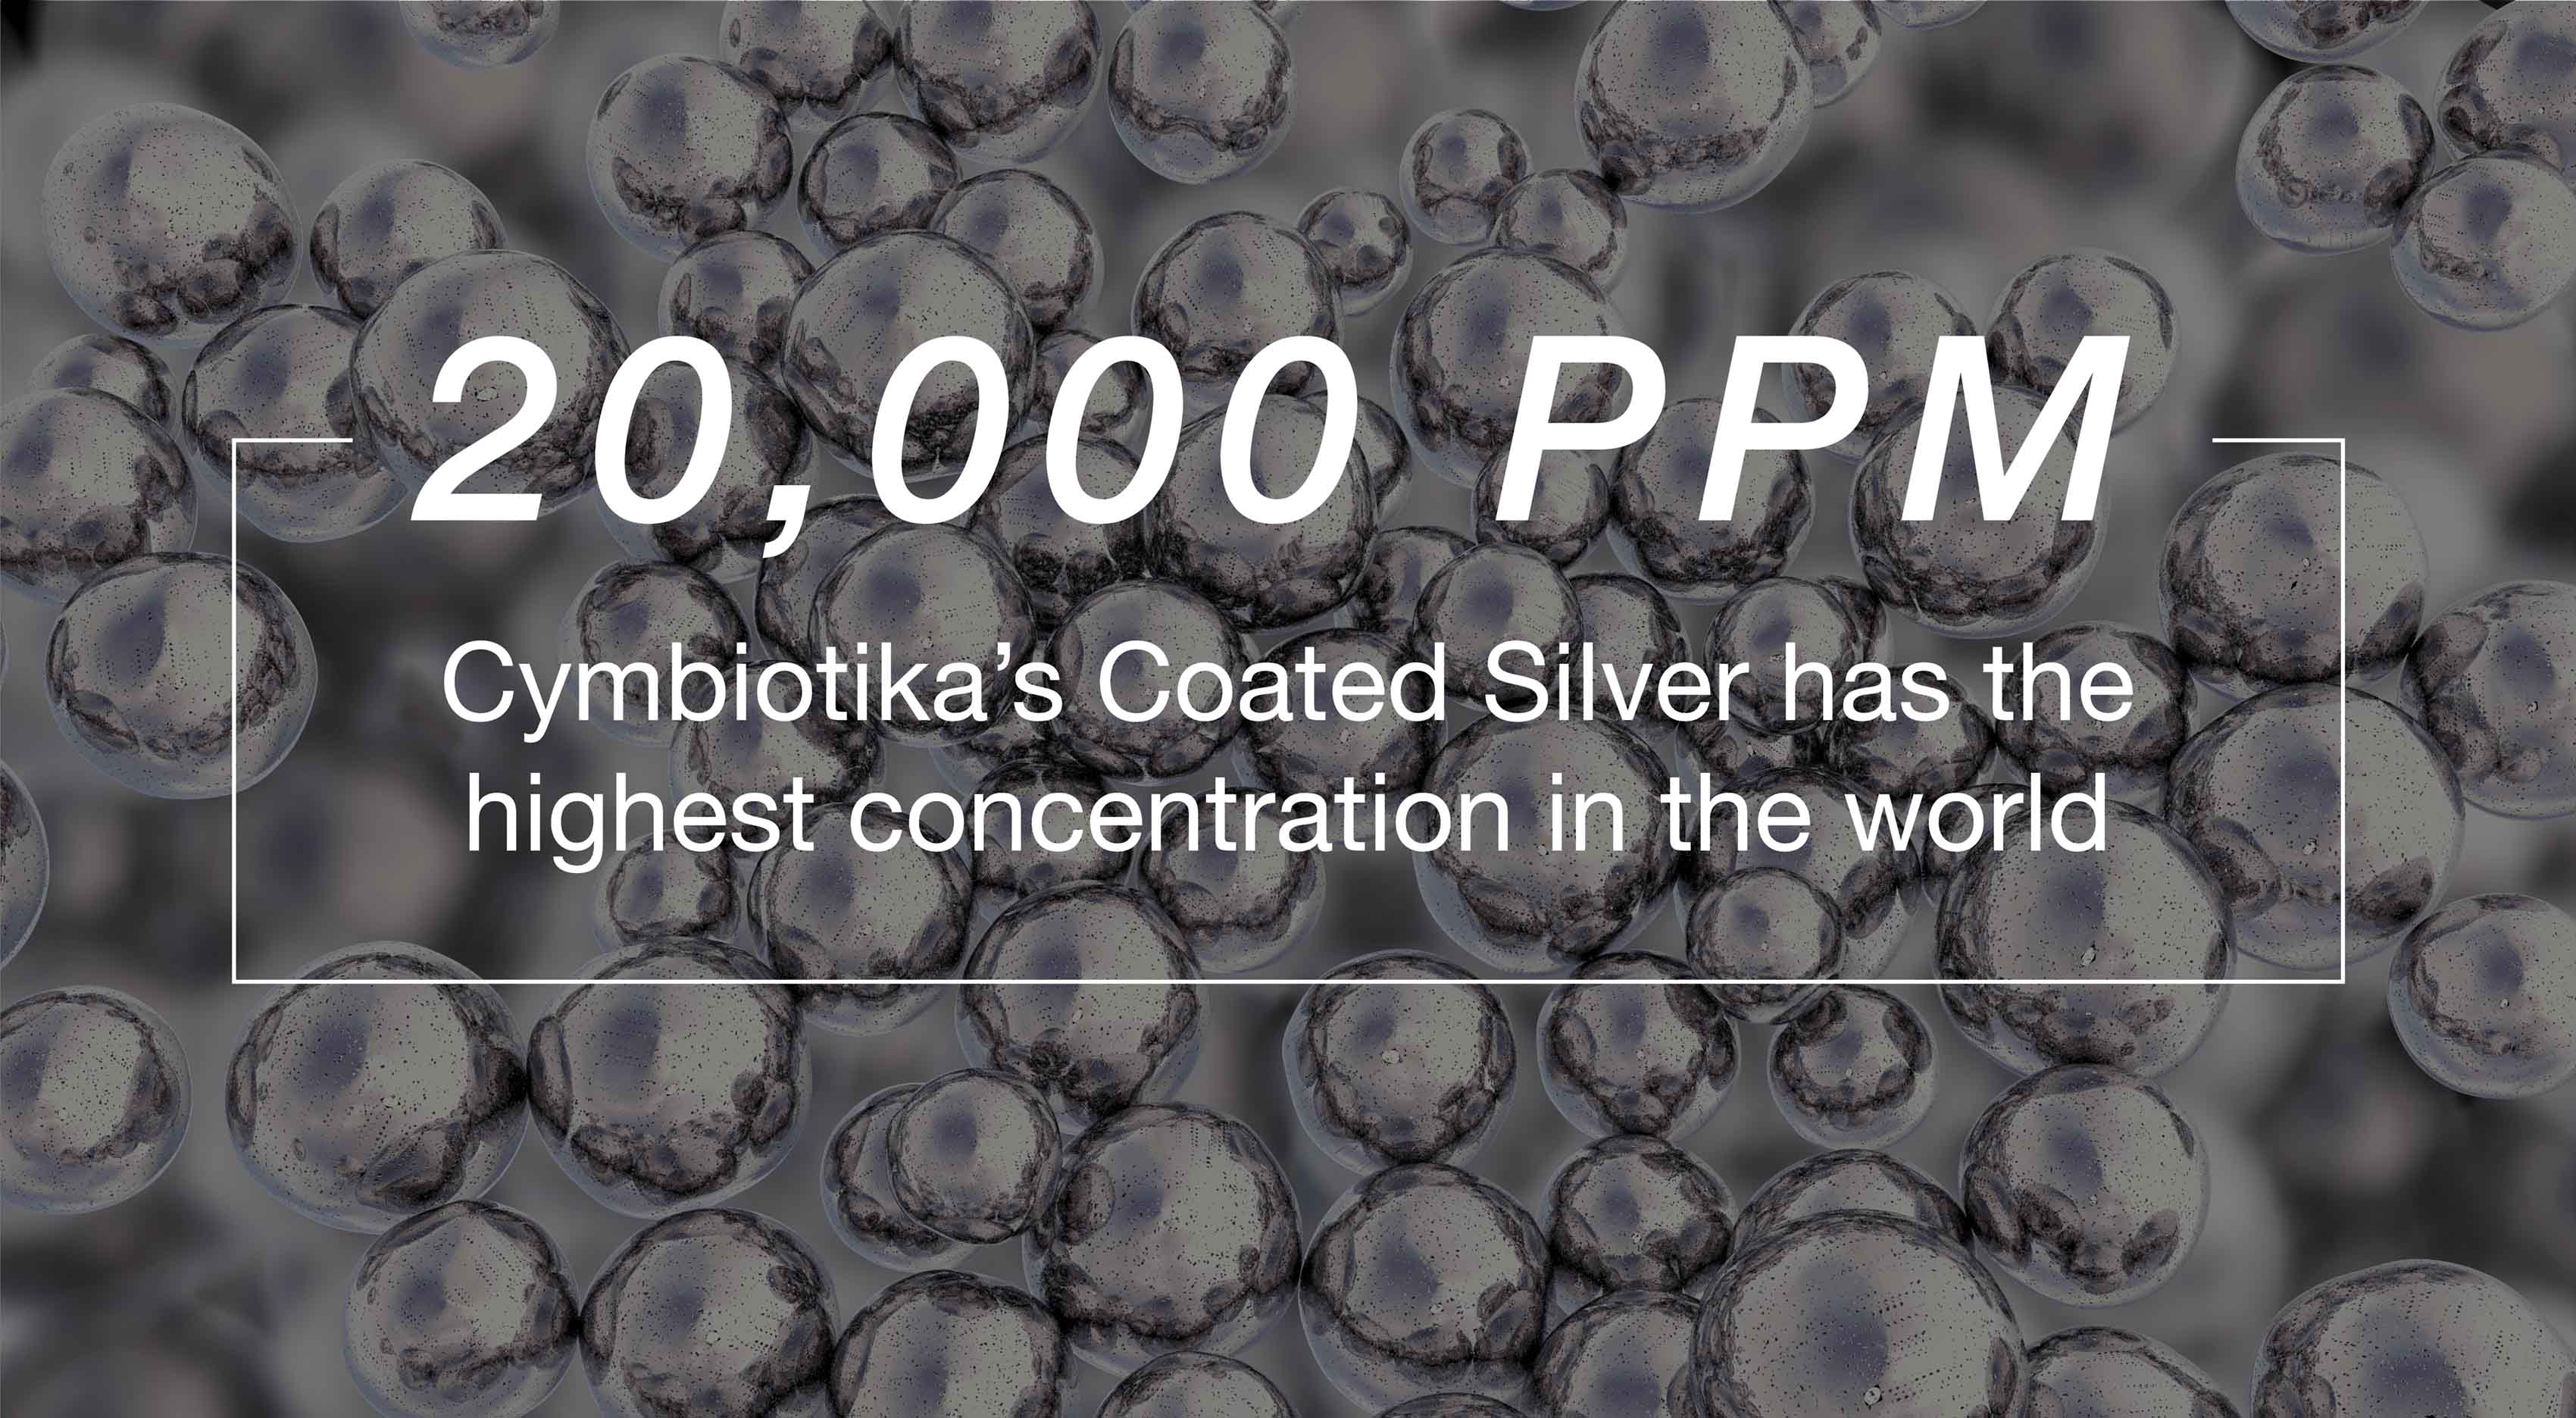 Con 20.000, la plata recubierta de Cymbiotika tiene la concentración más alta del mundo.